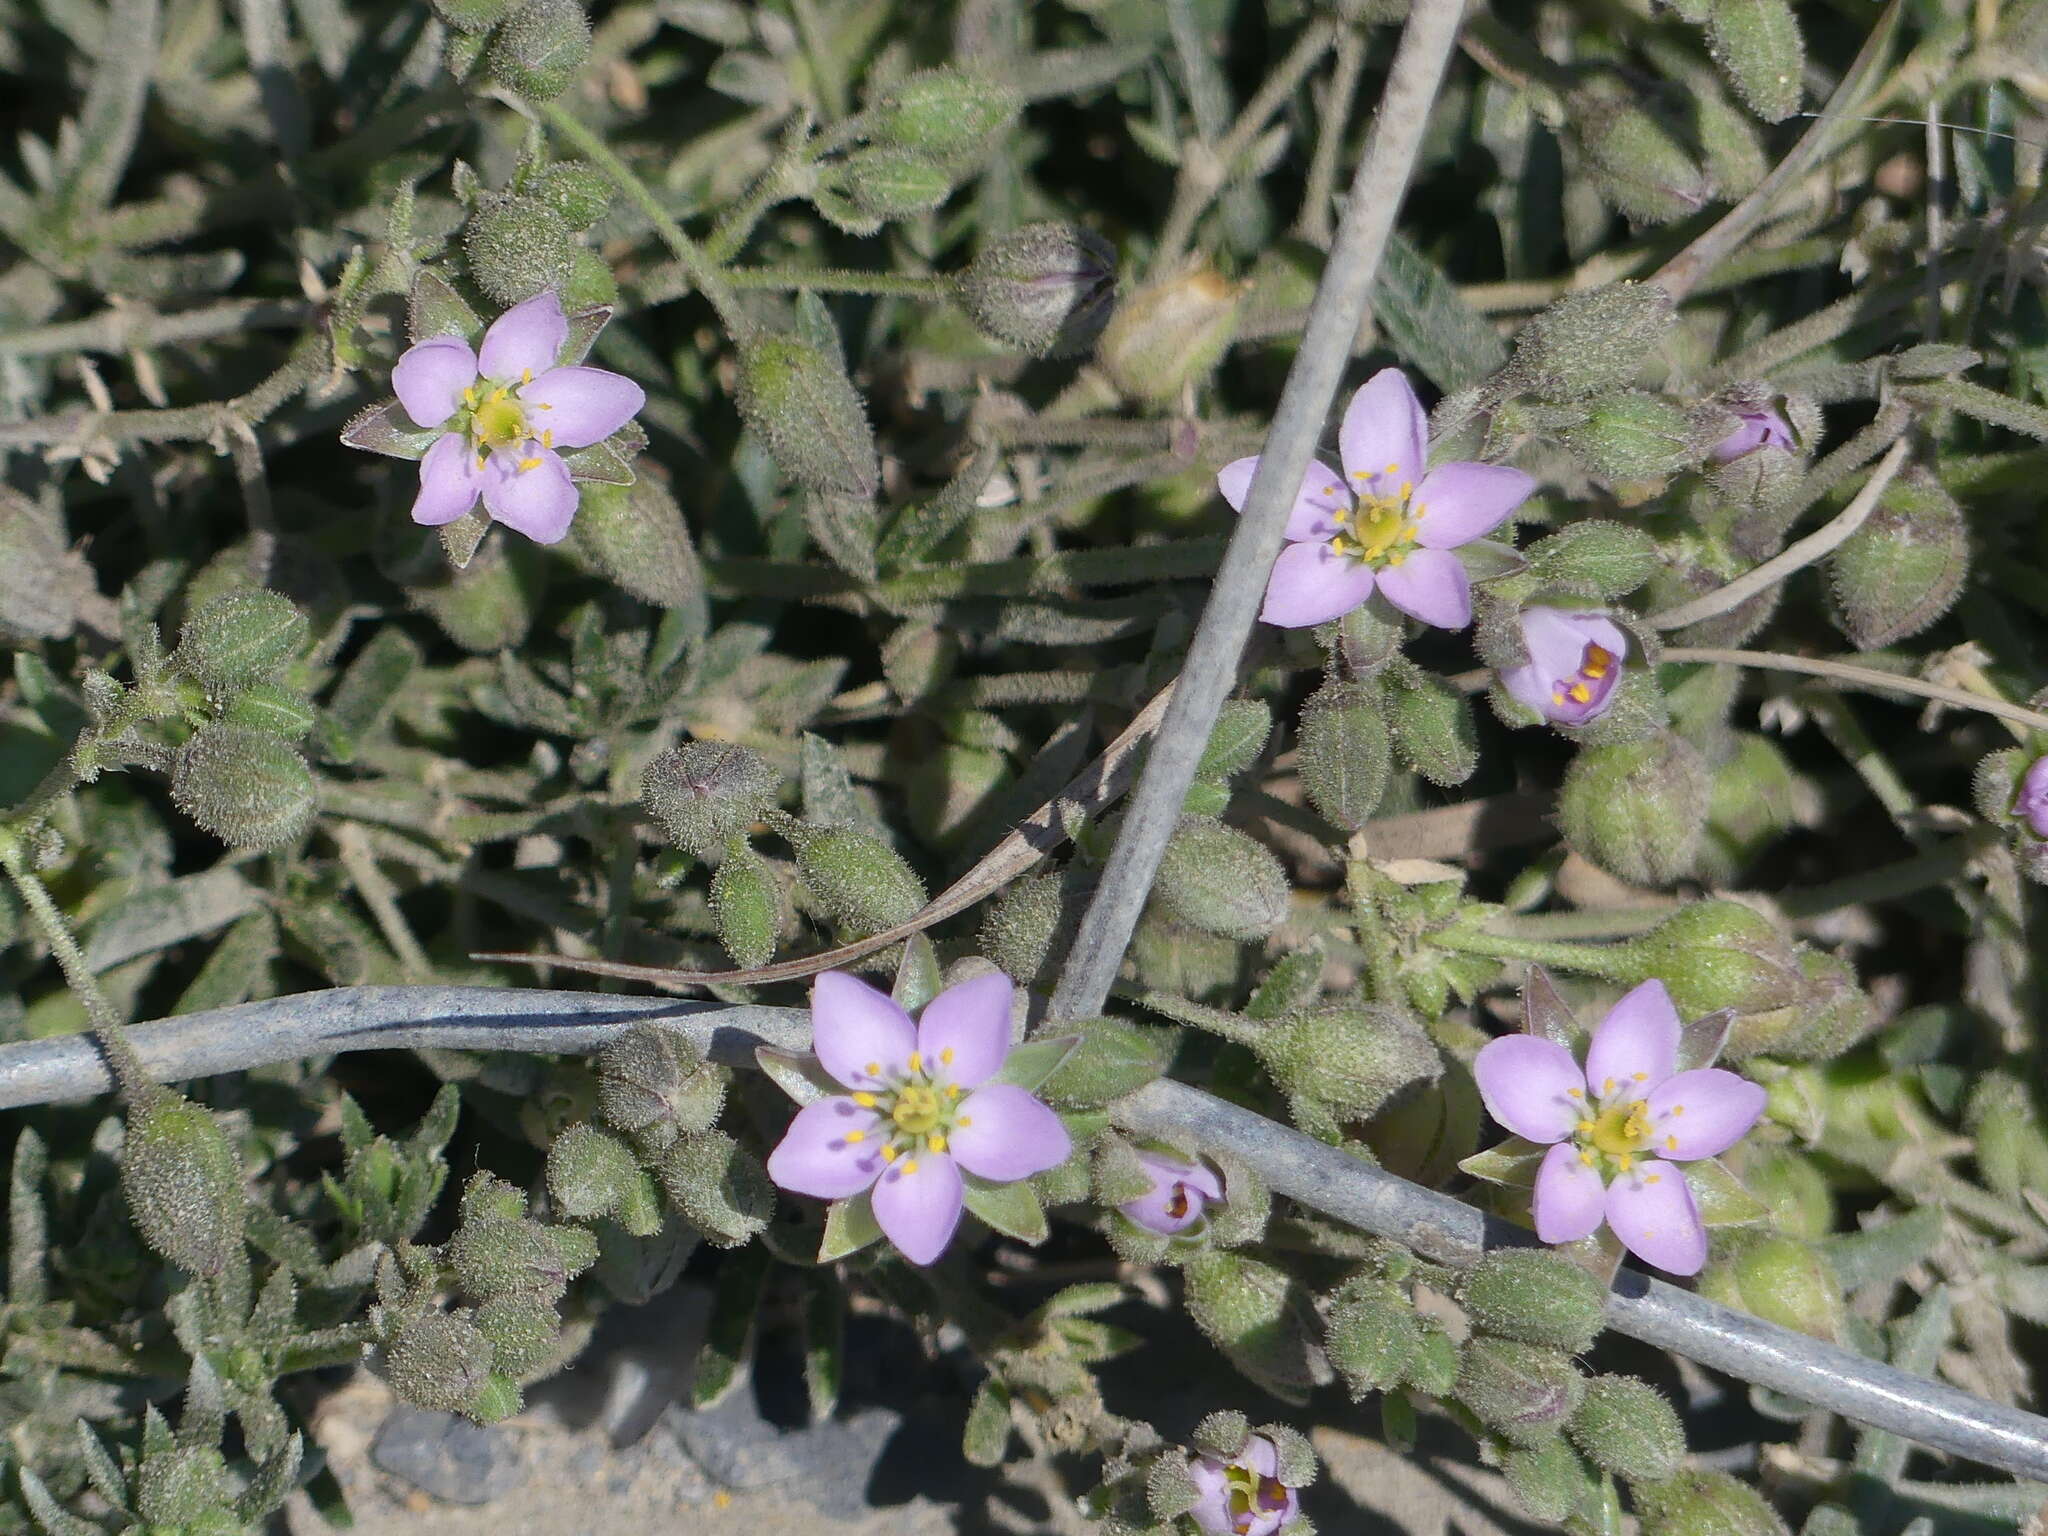 Image of Spergularia rupicola Le Jolis